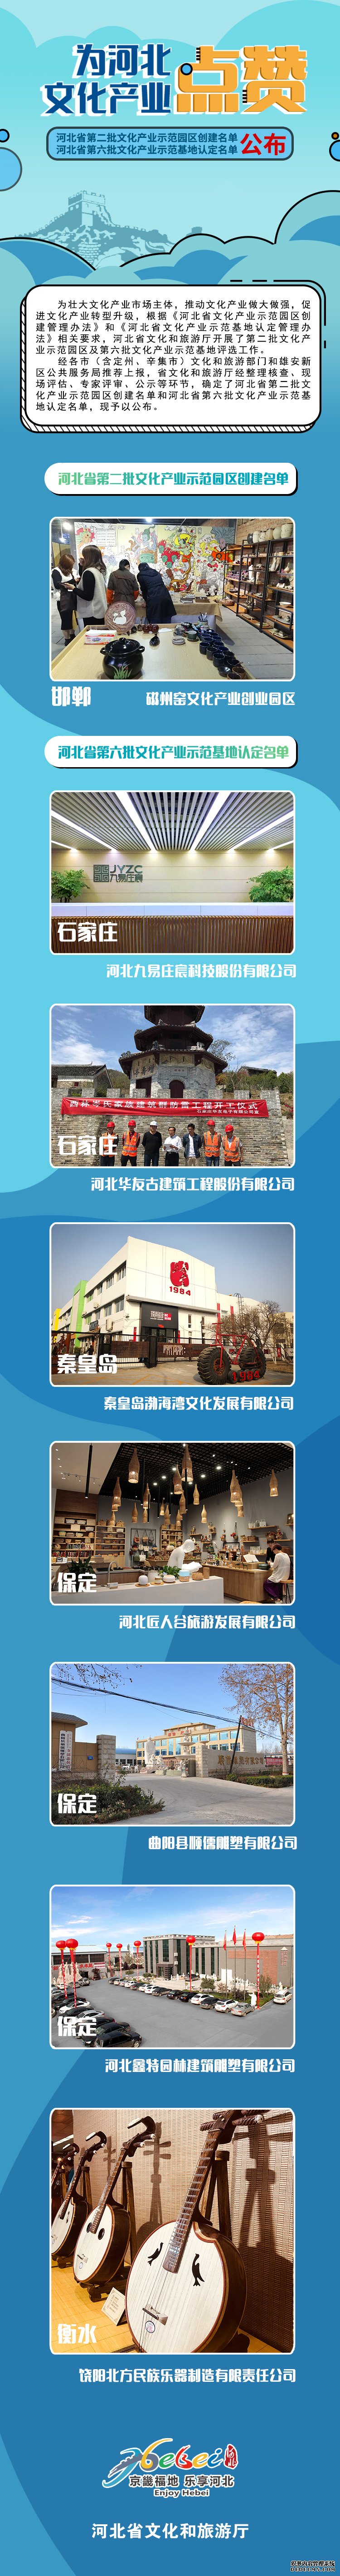 2019年河北省文化产业示范园区创建和示范基地名单公布